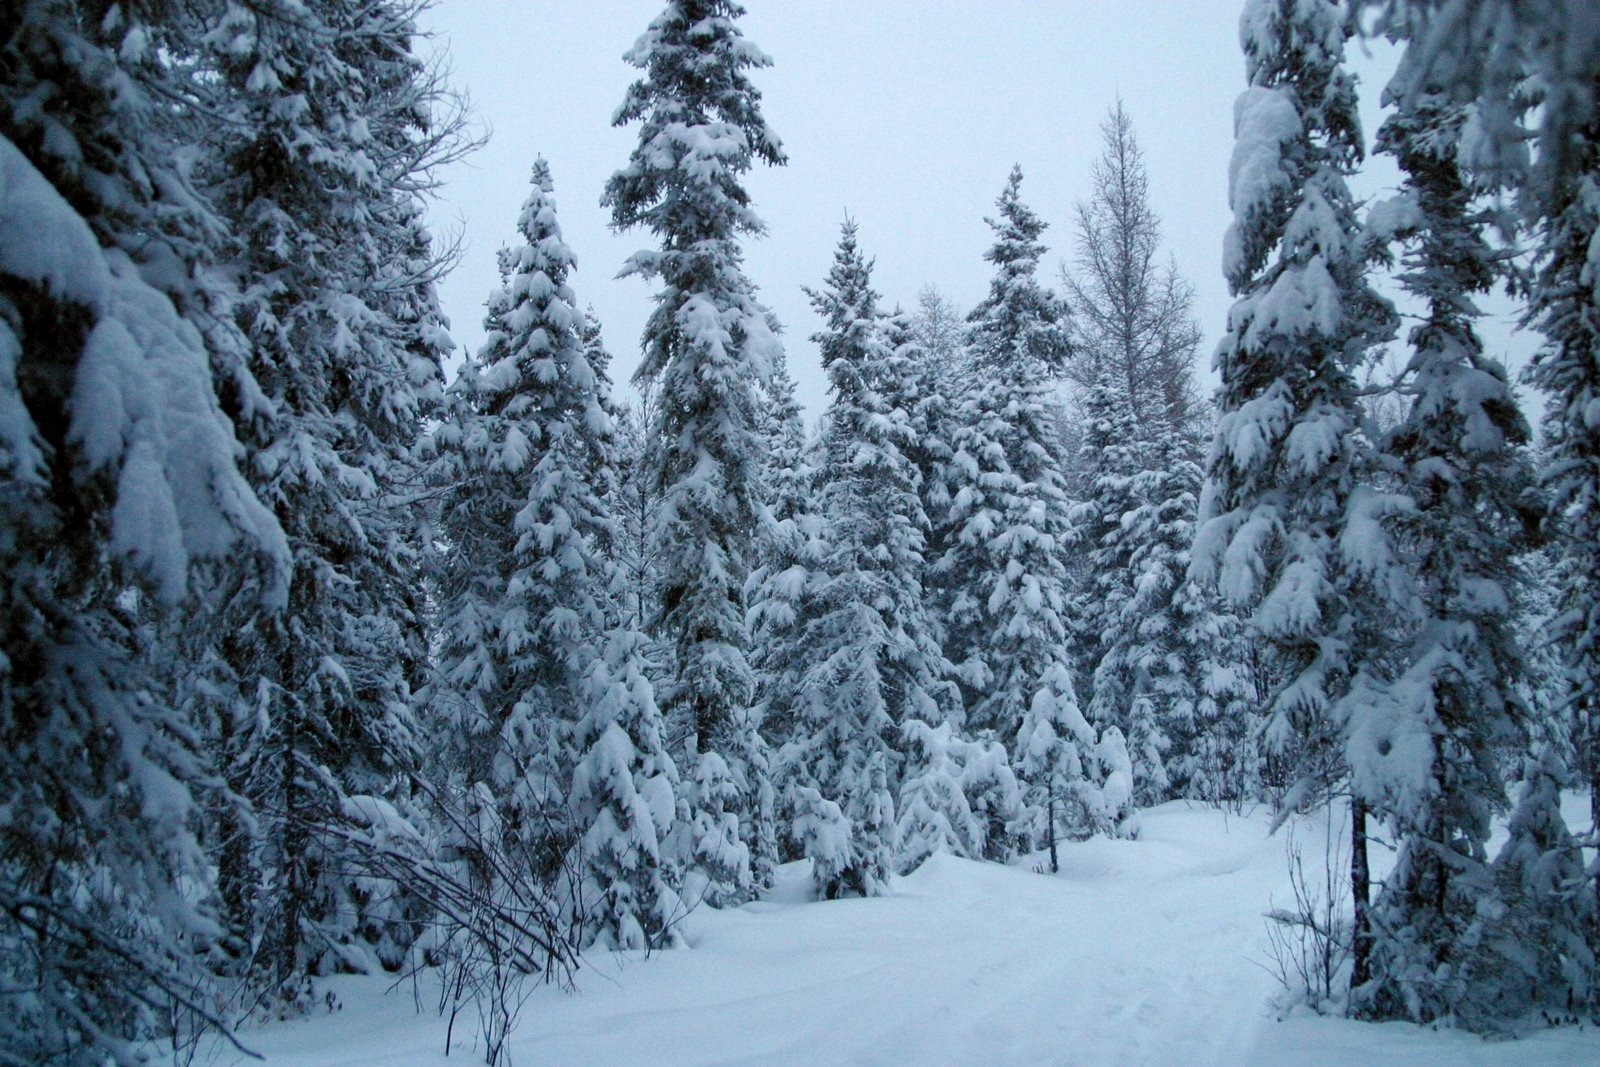 Snowy pines in Northwestern Ontario